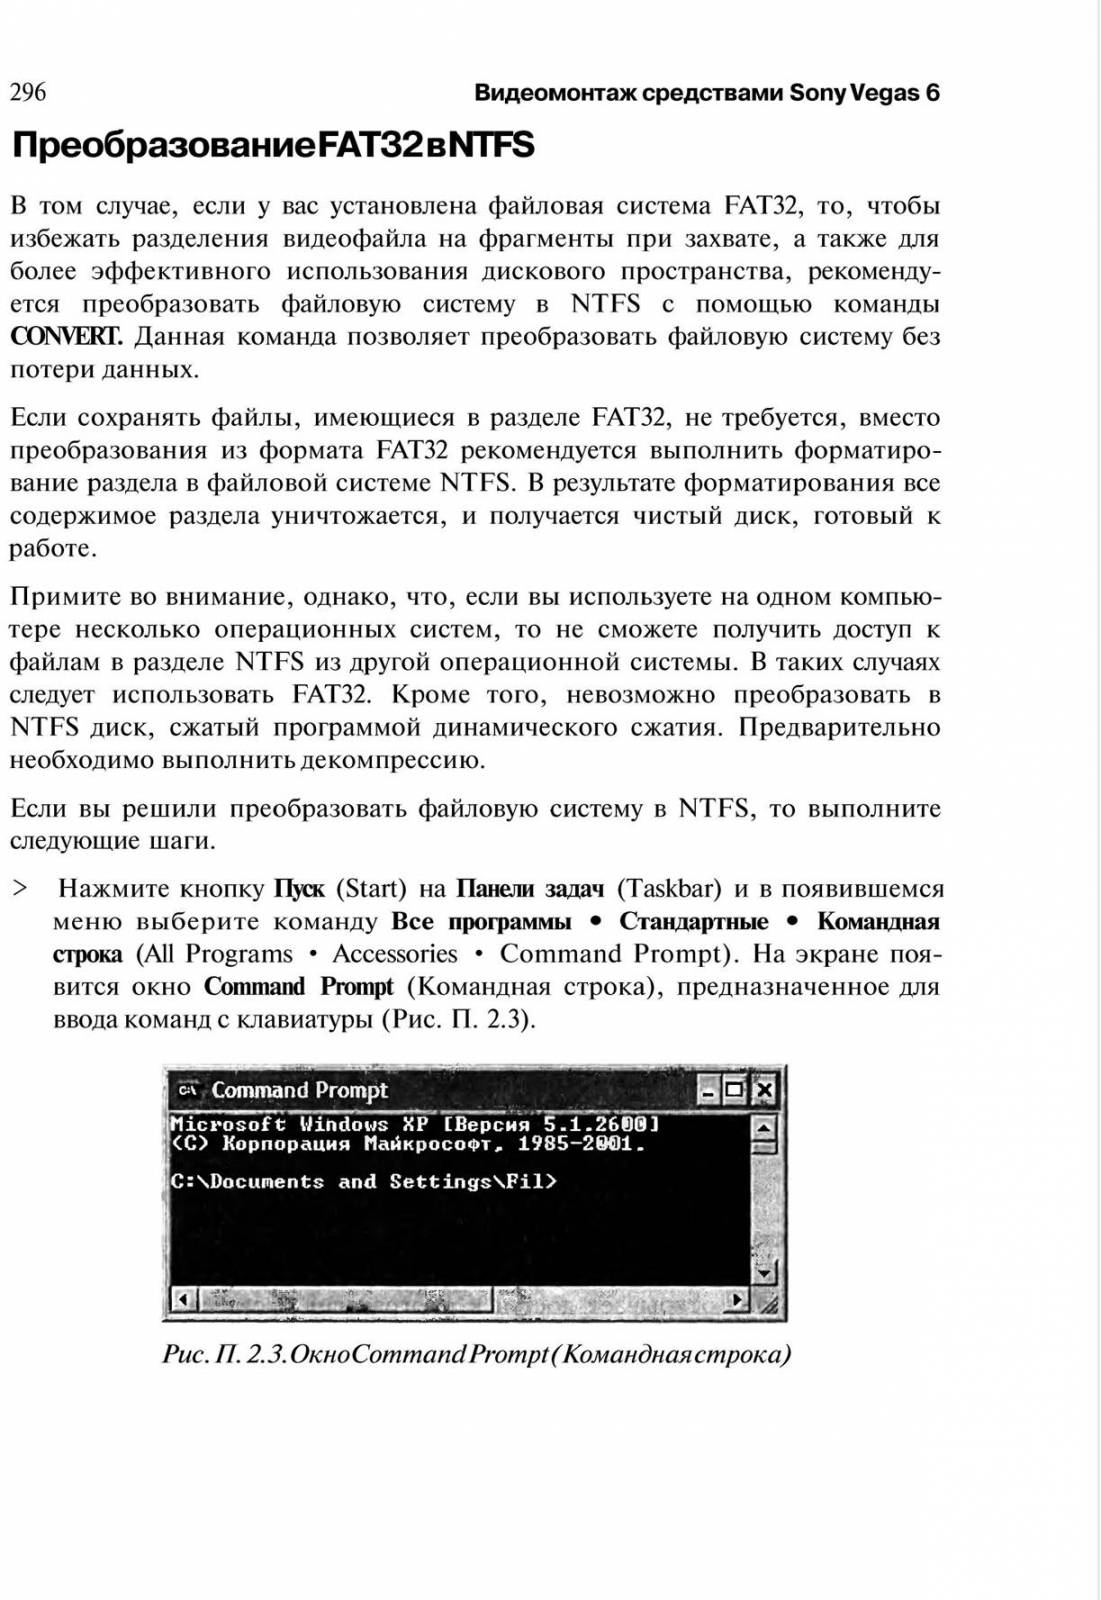 http://redaktori-uroki.3dn.ru/_ph/14/351245152.jpg